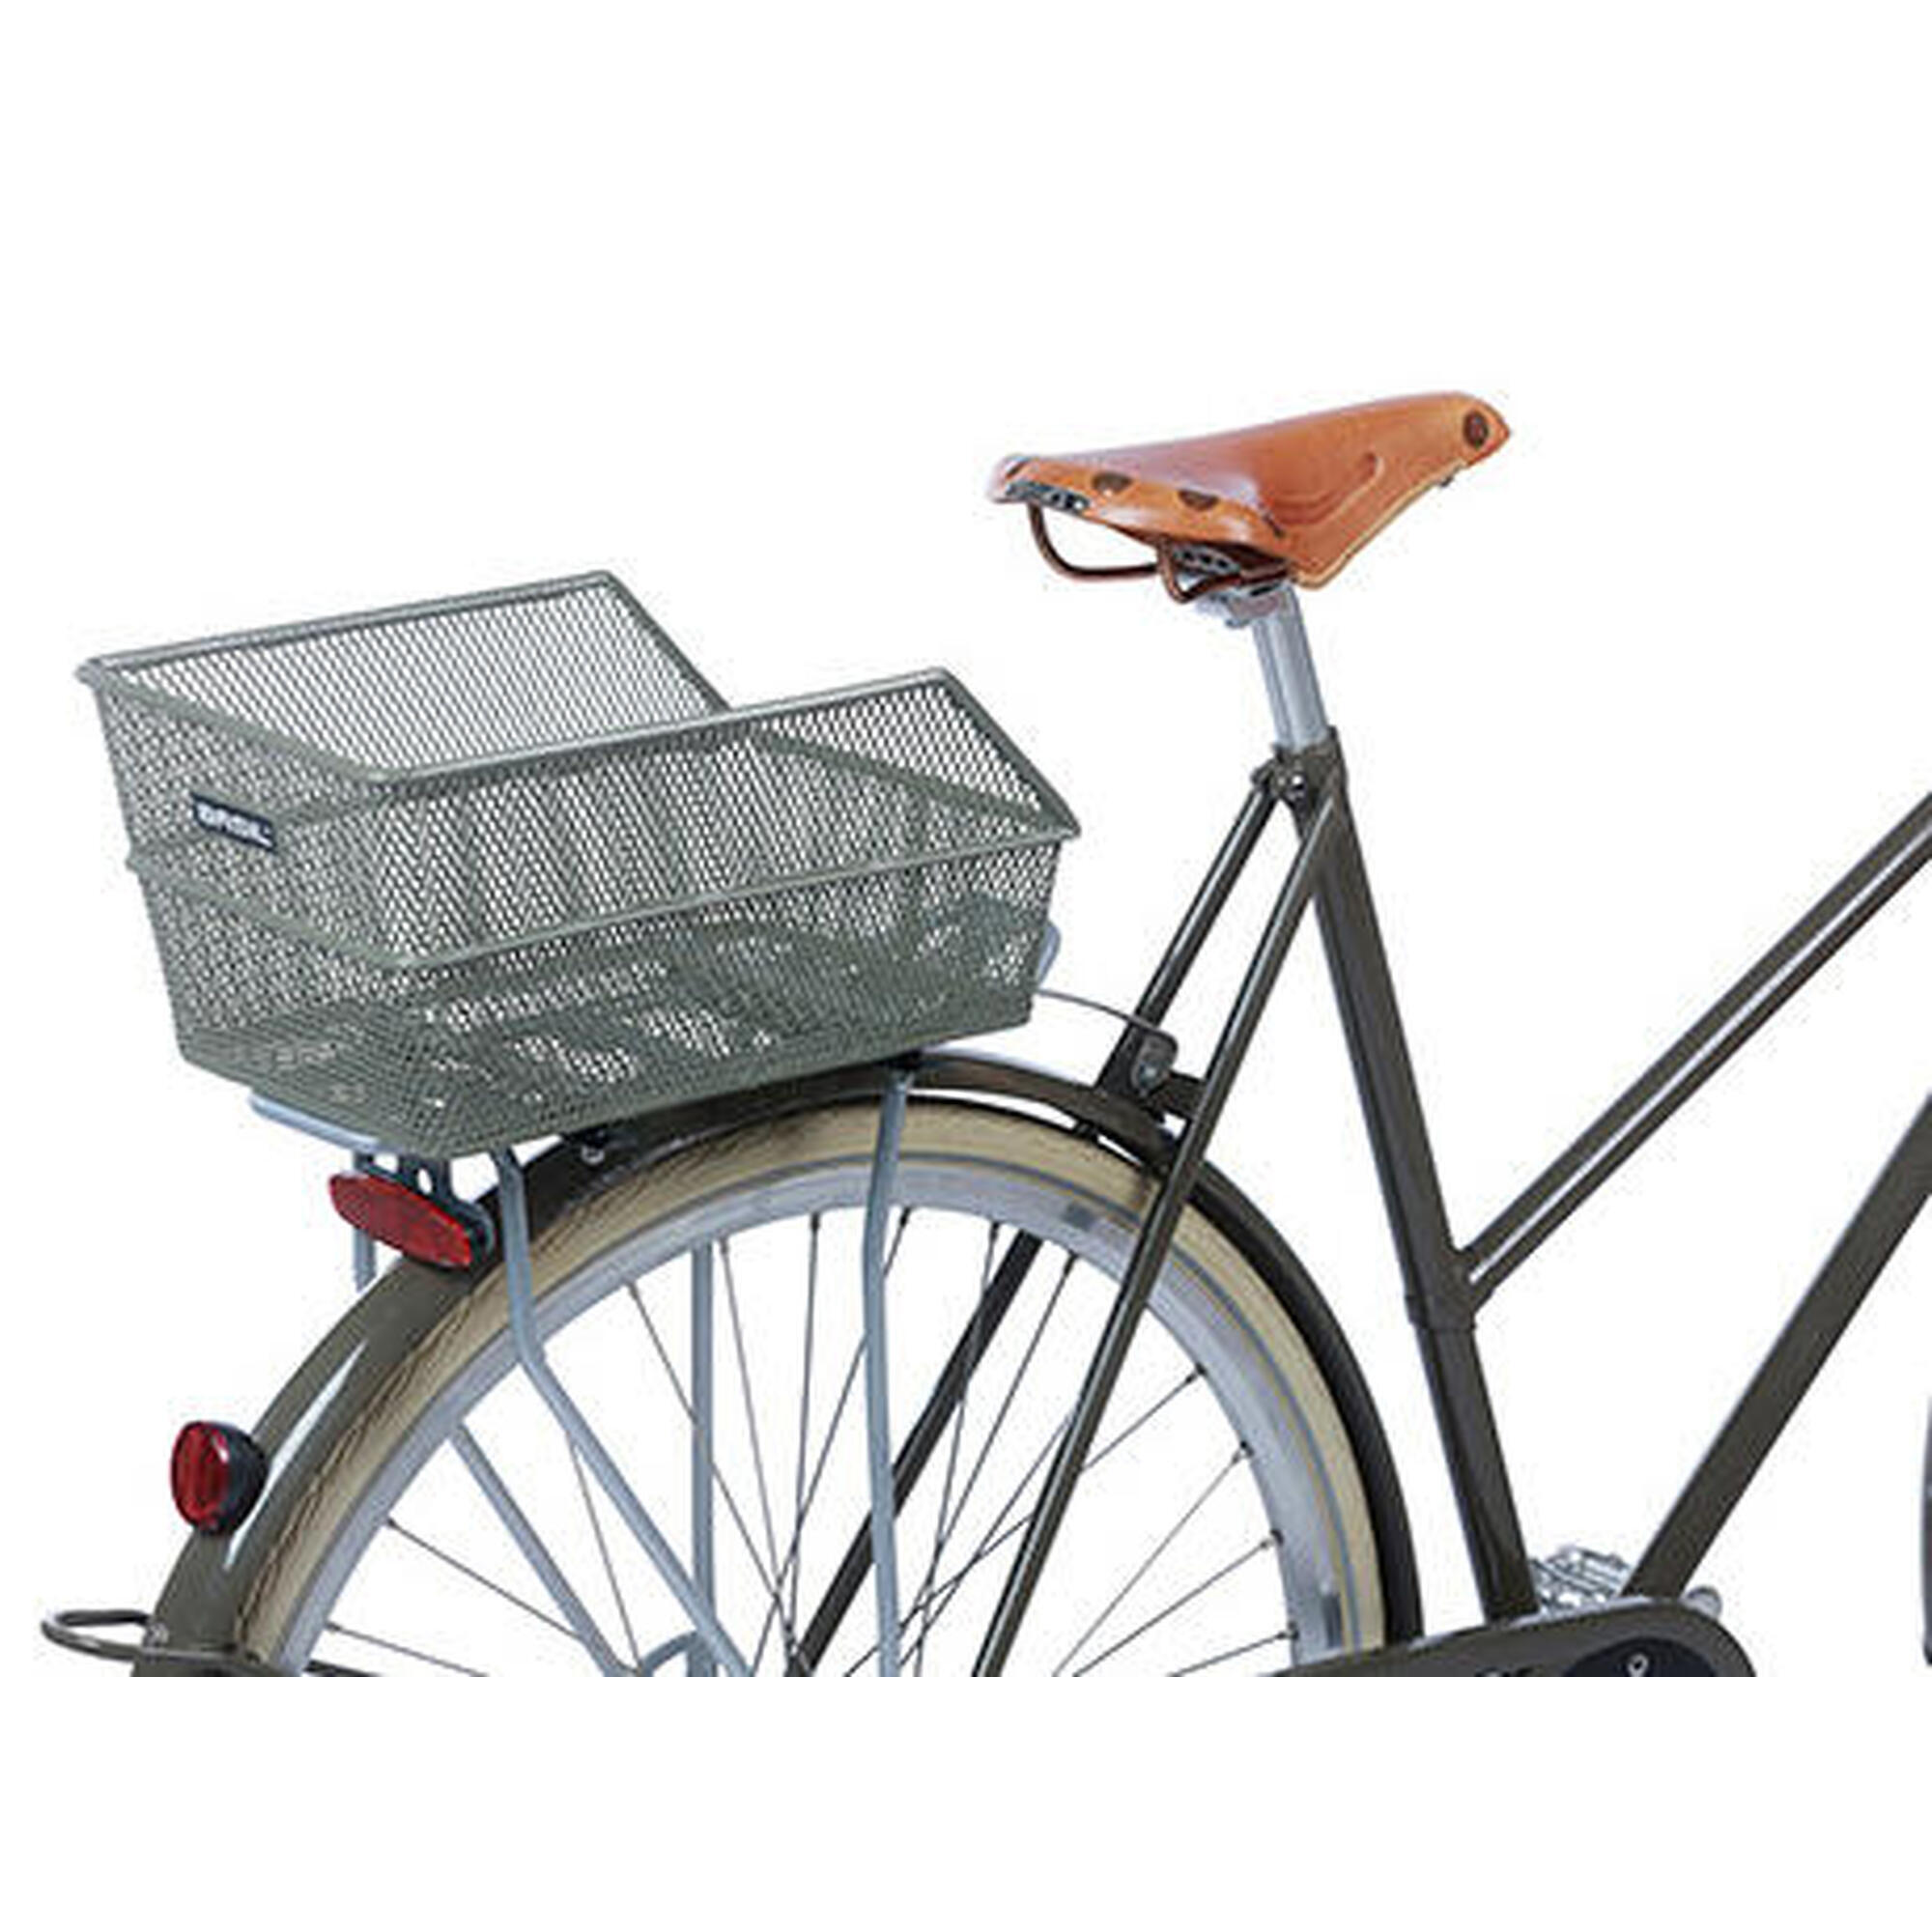 Panier à vélo Cento S FM avec fixation fixe 31 x 21 x 9 cm - vert olive